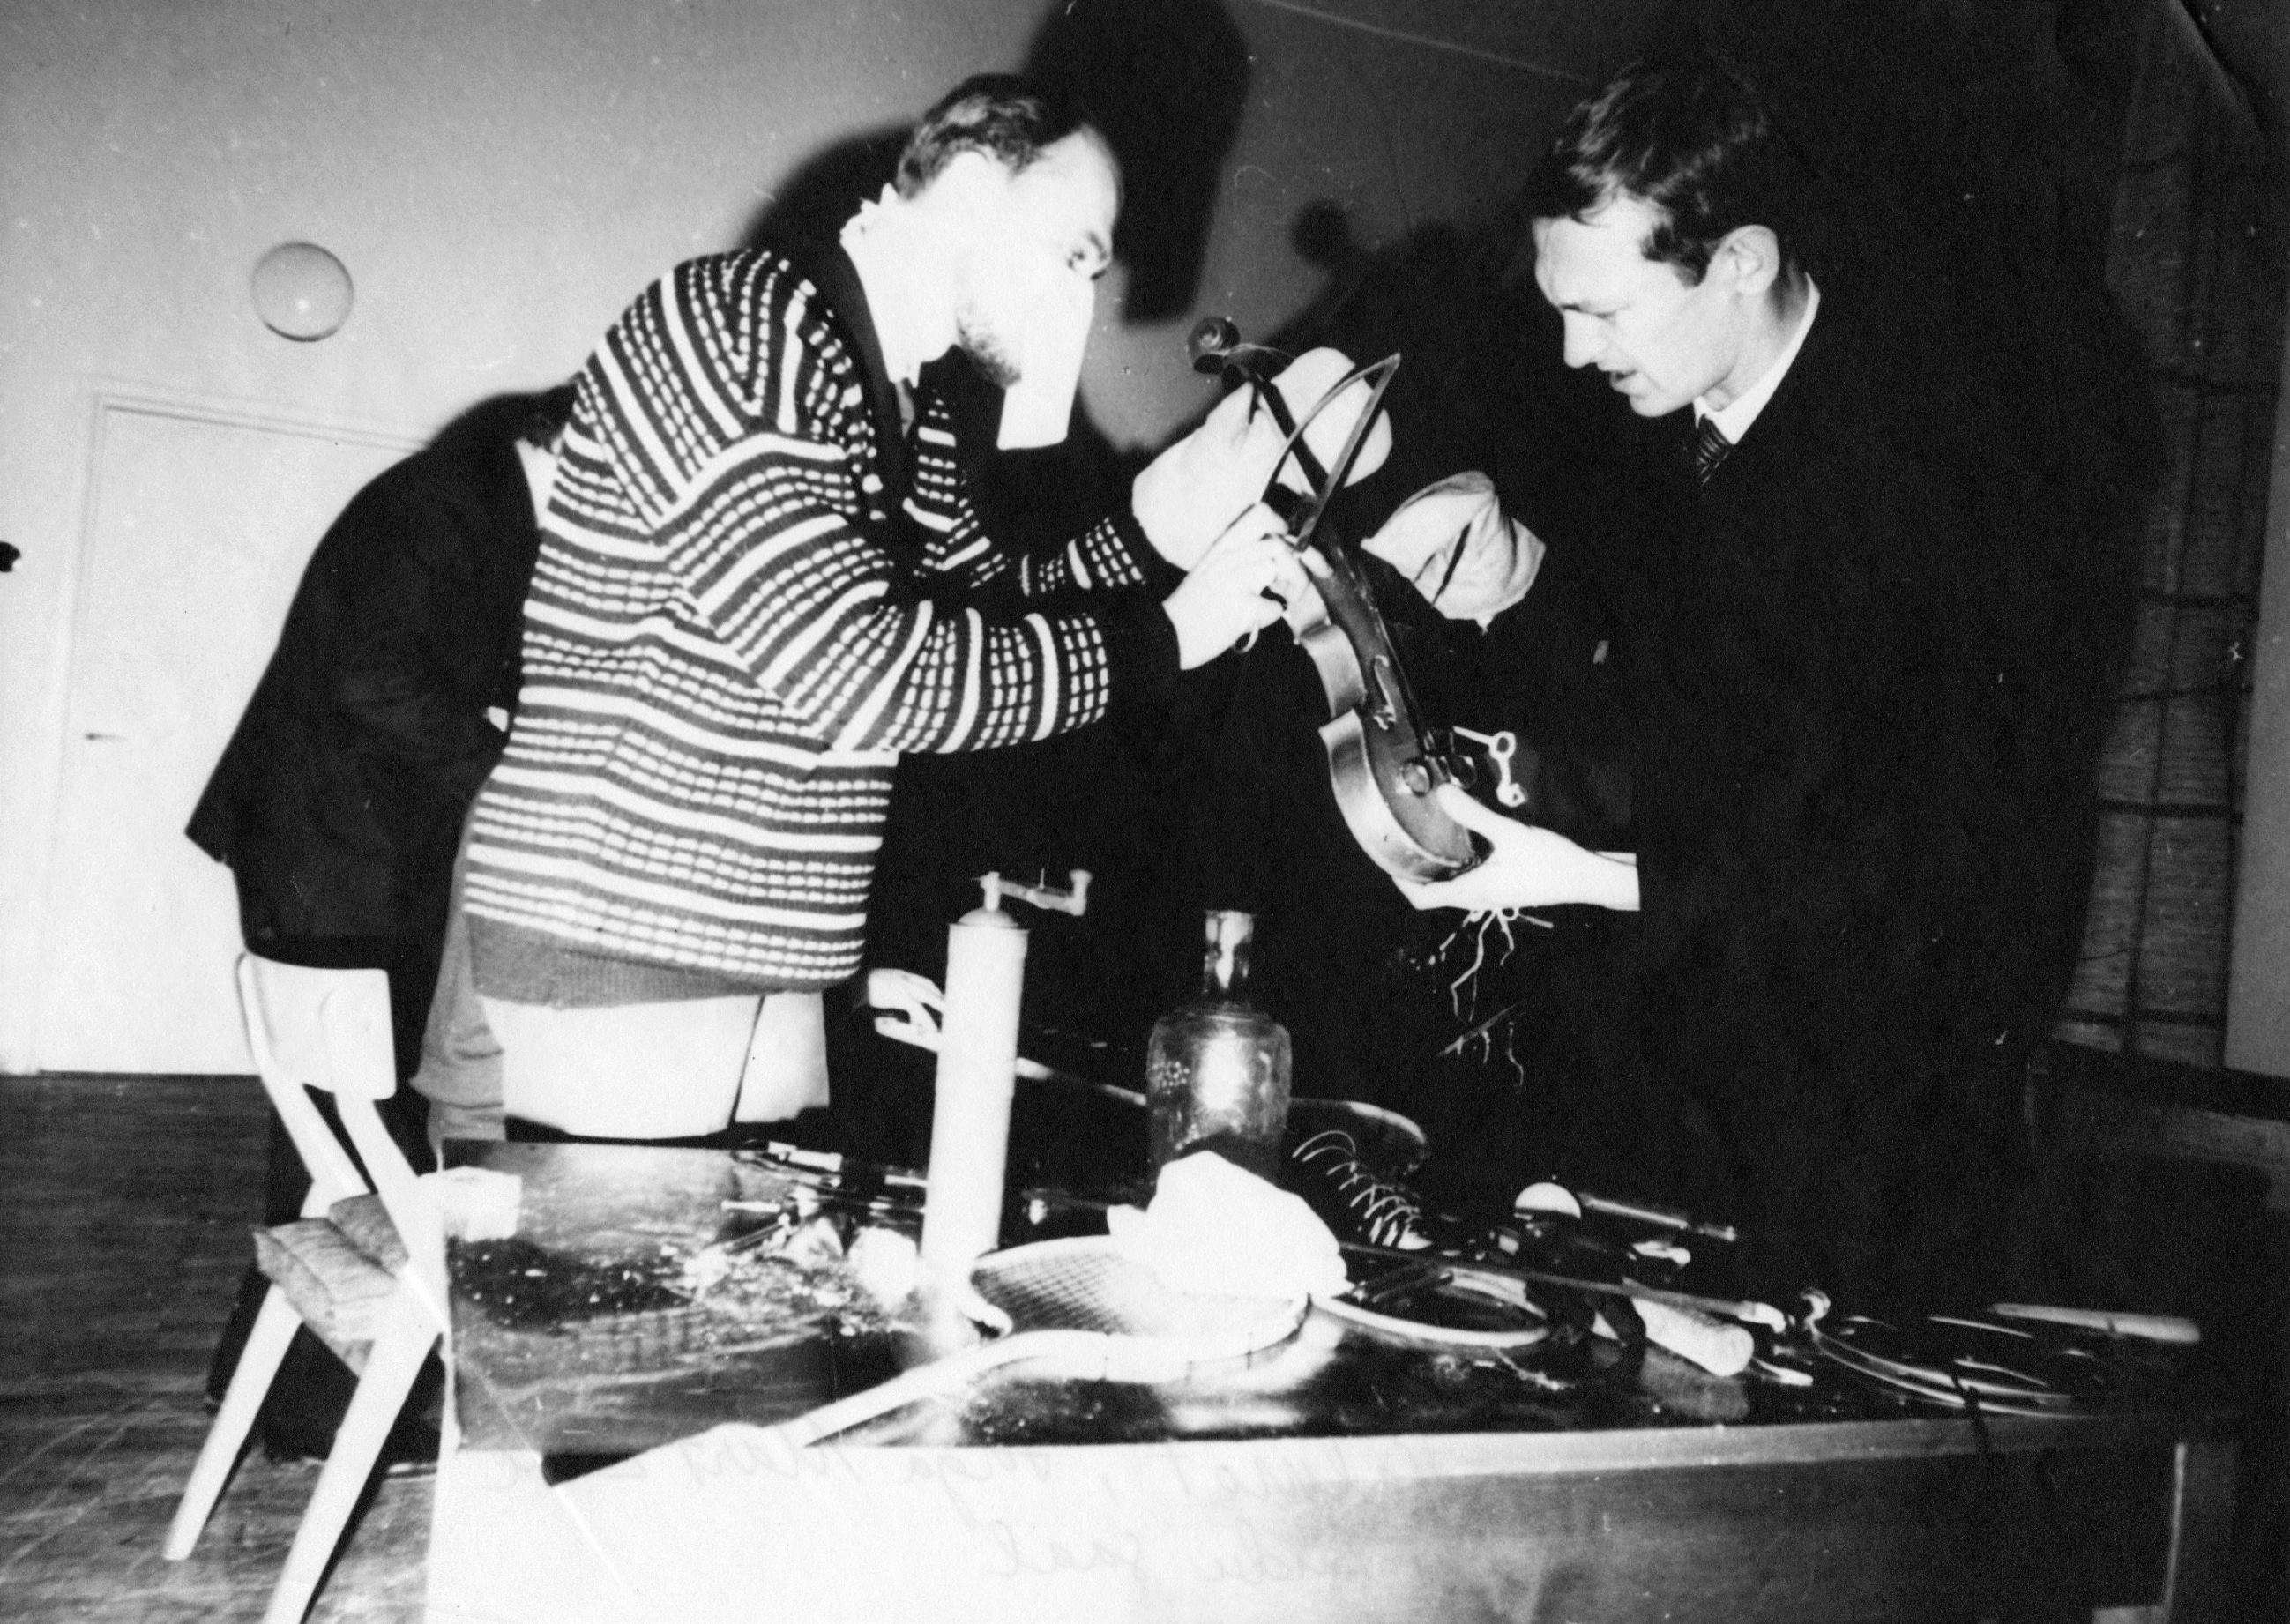 Rein Tenson, Jüri Tenson, Priit Pärn, Krista Virkus, Mari Kuutmaa, “Reading the Paper,” mid-1960s, happening in Nõmme, Tallinn, photo by Jüri Tenson. Image courtesy of the Art Museum of Estonia, Tallinn.